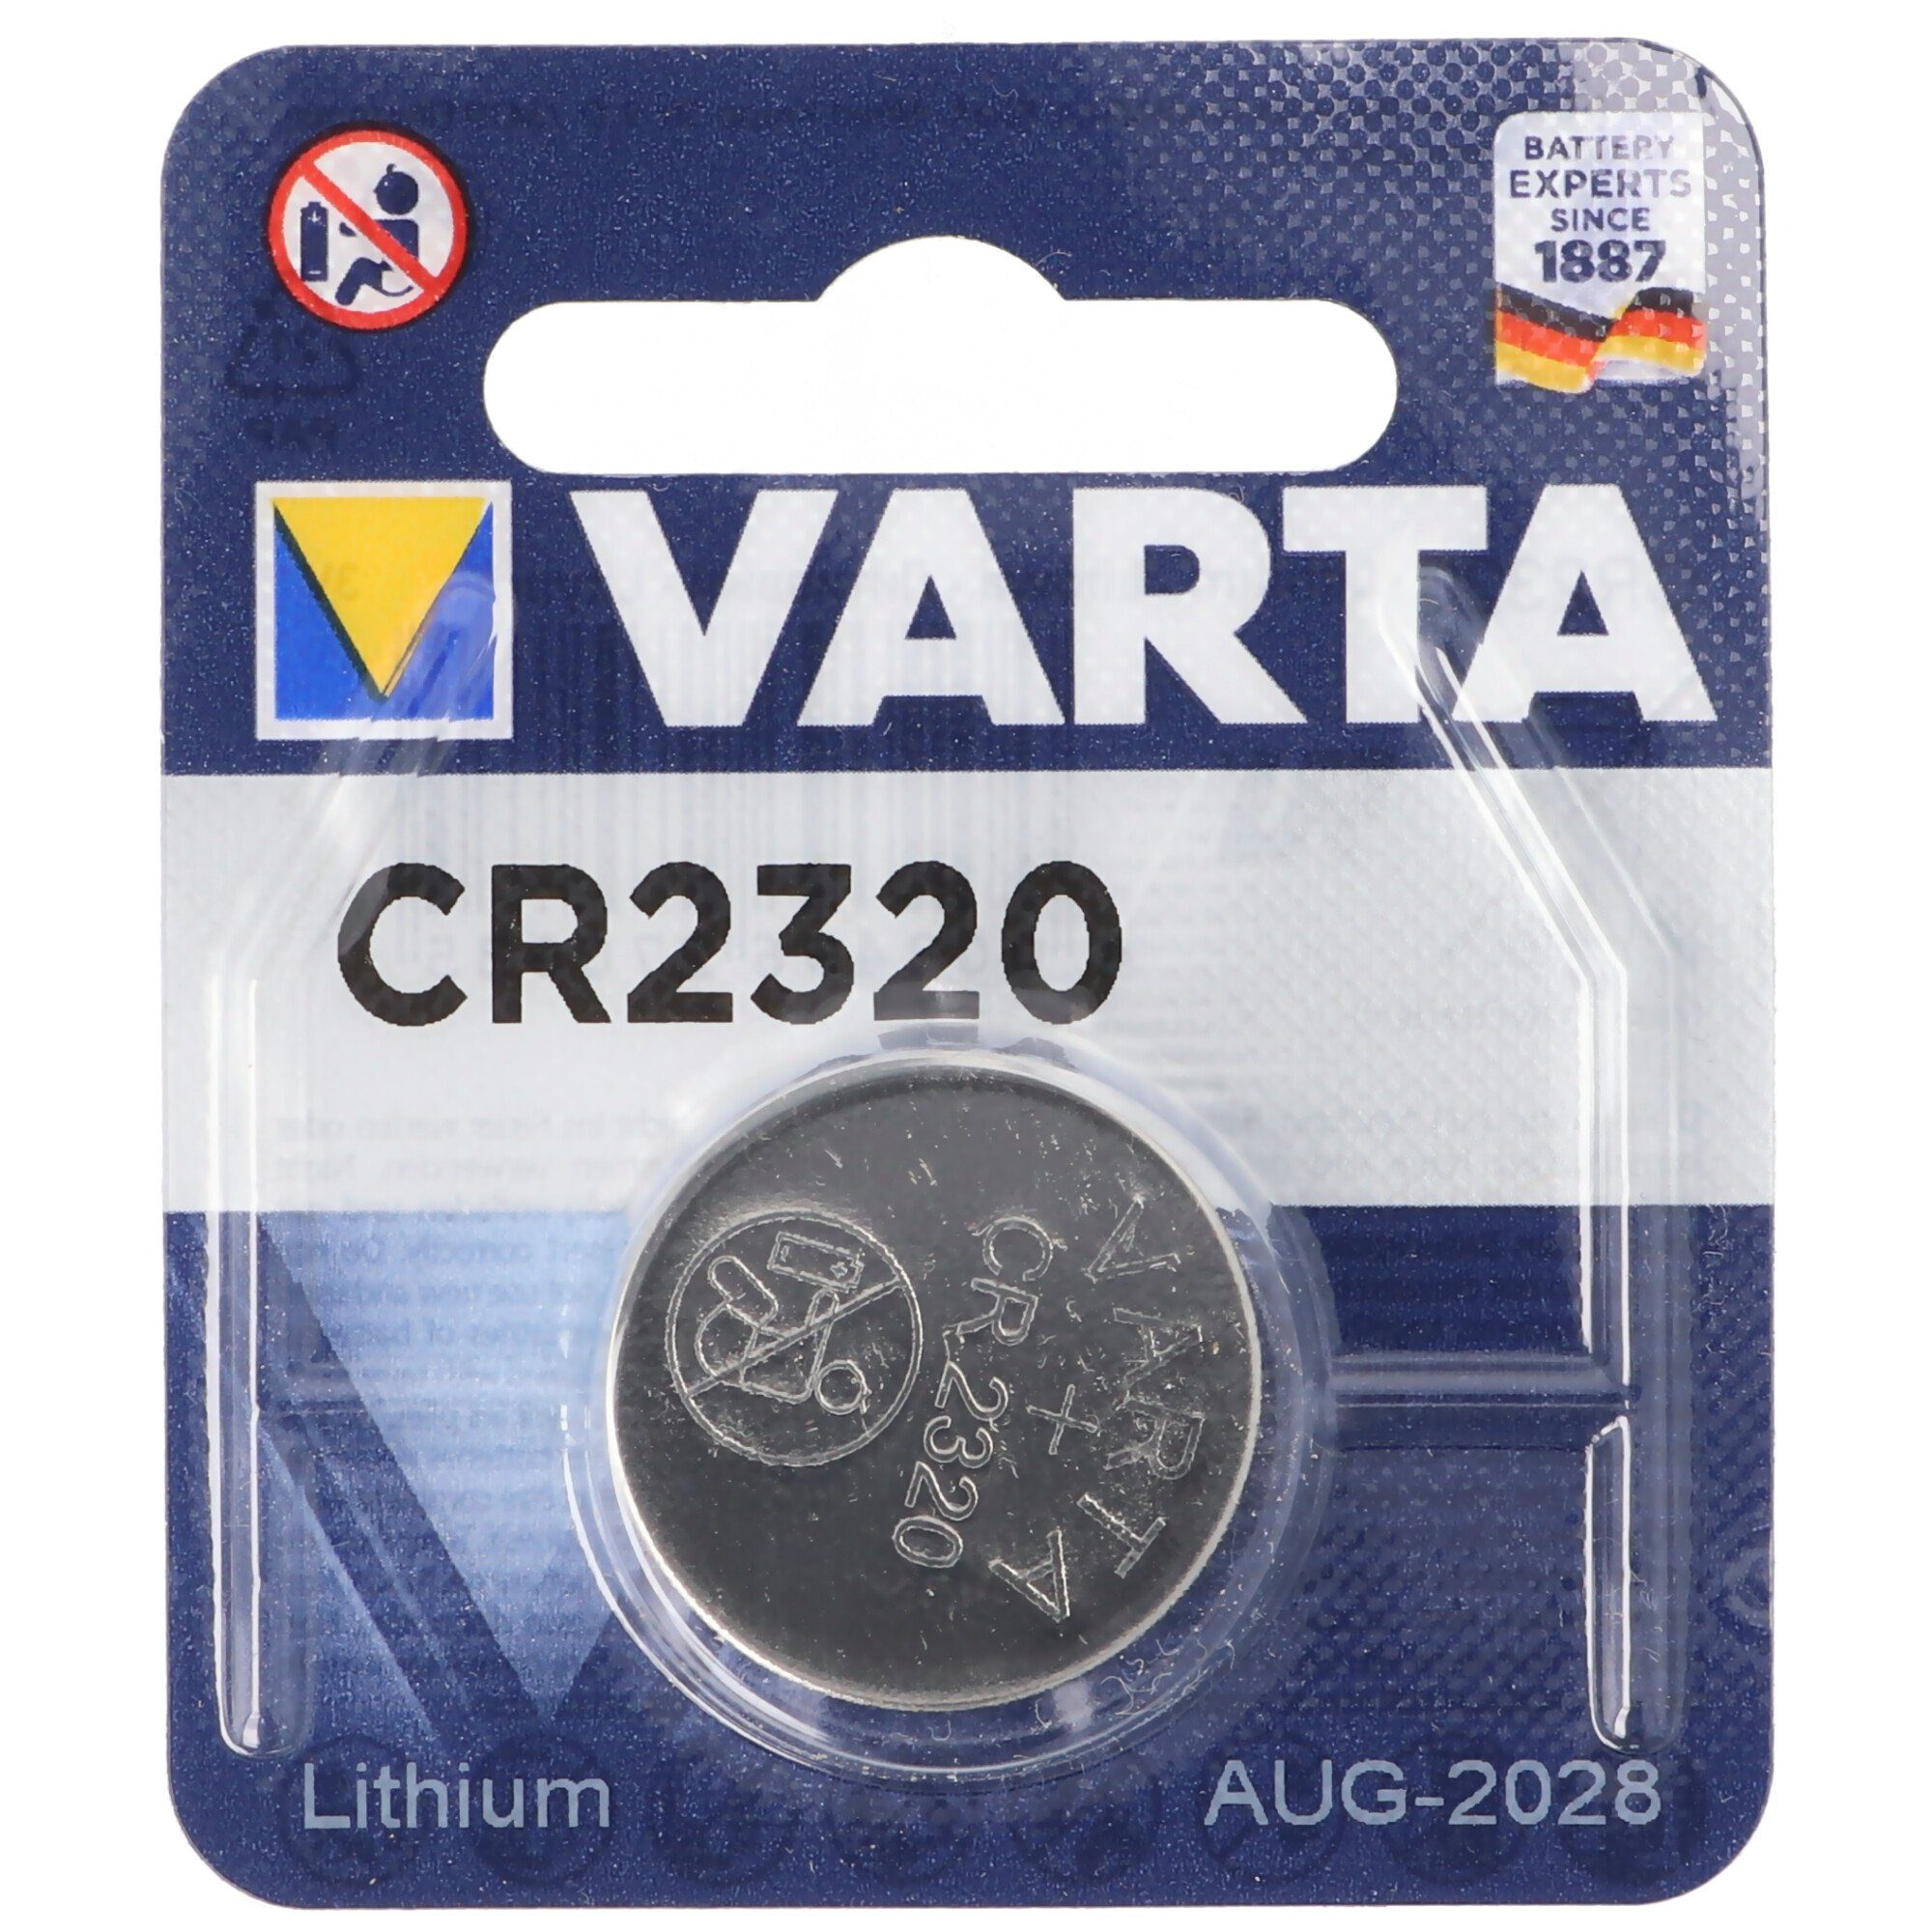 VARTA Varta CR2320 Lithium Batterie Batterie, (3,0 V)